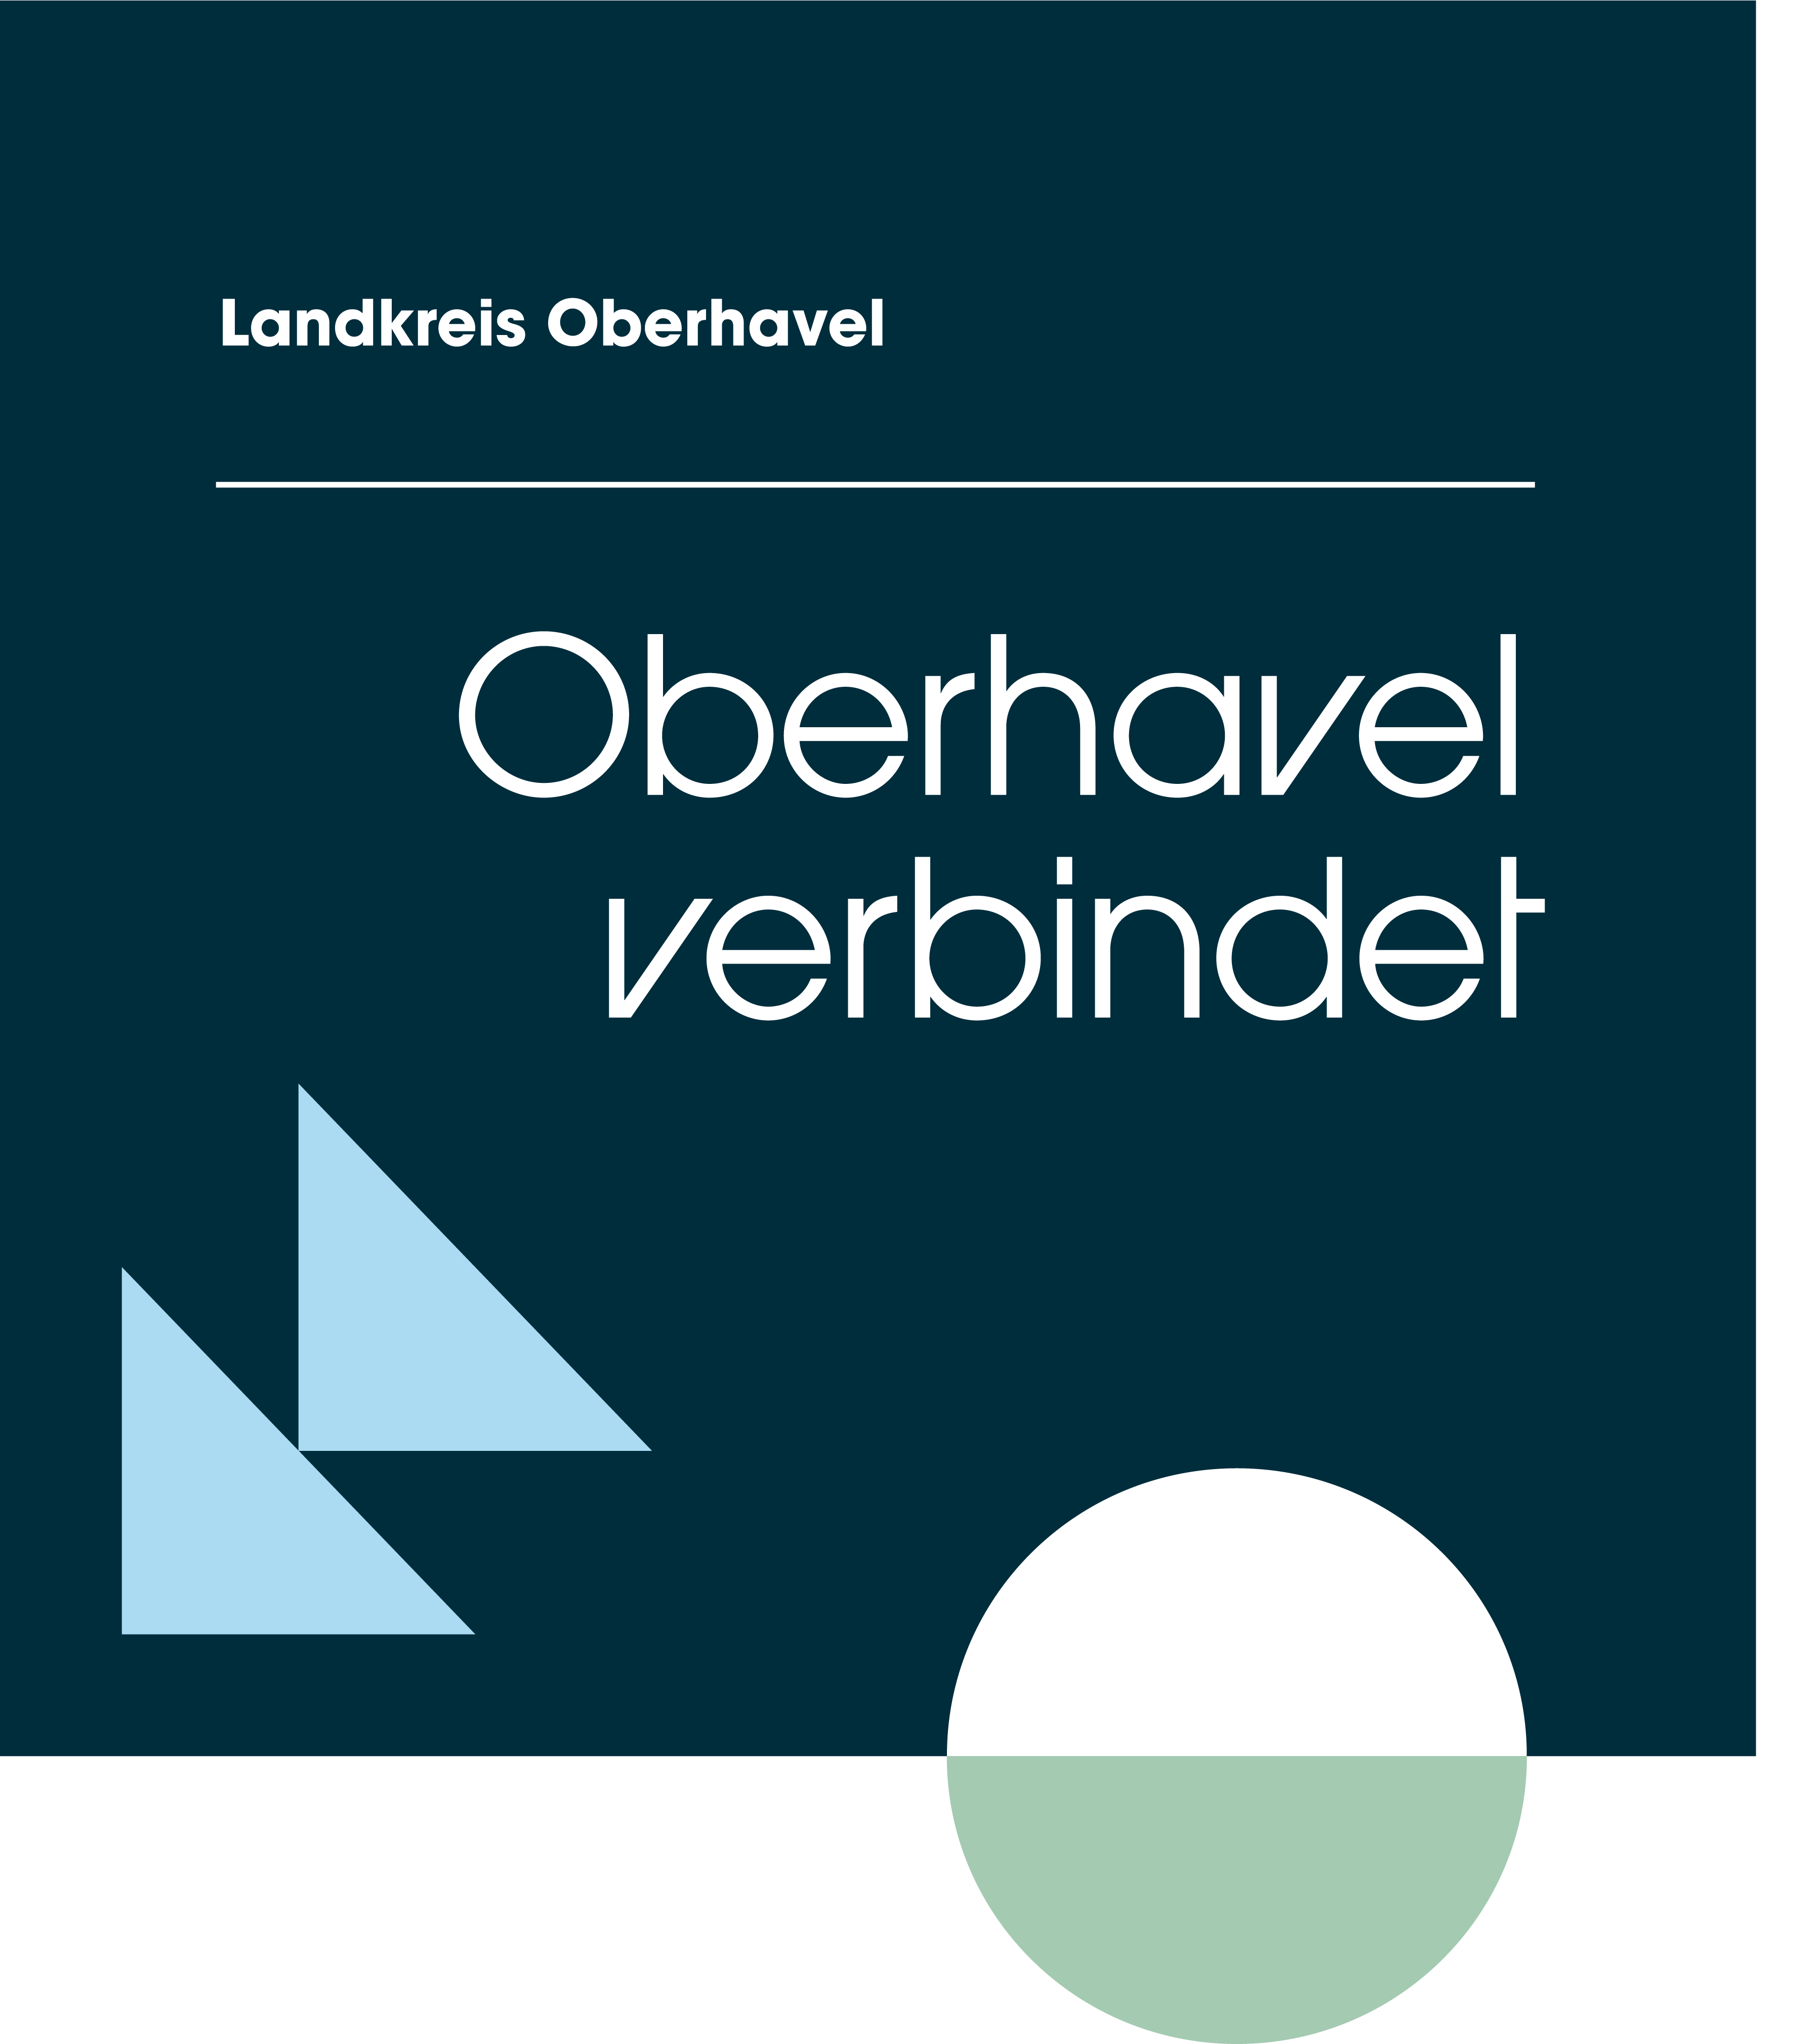 Oberhavel-verbindet-Label